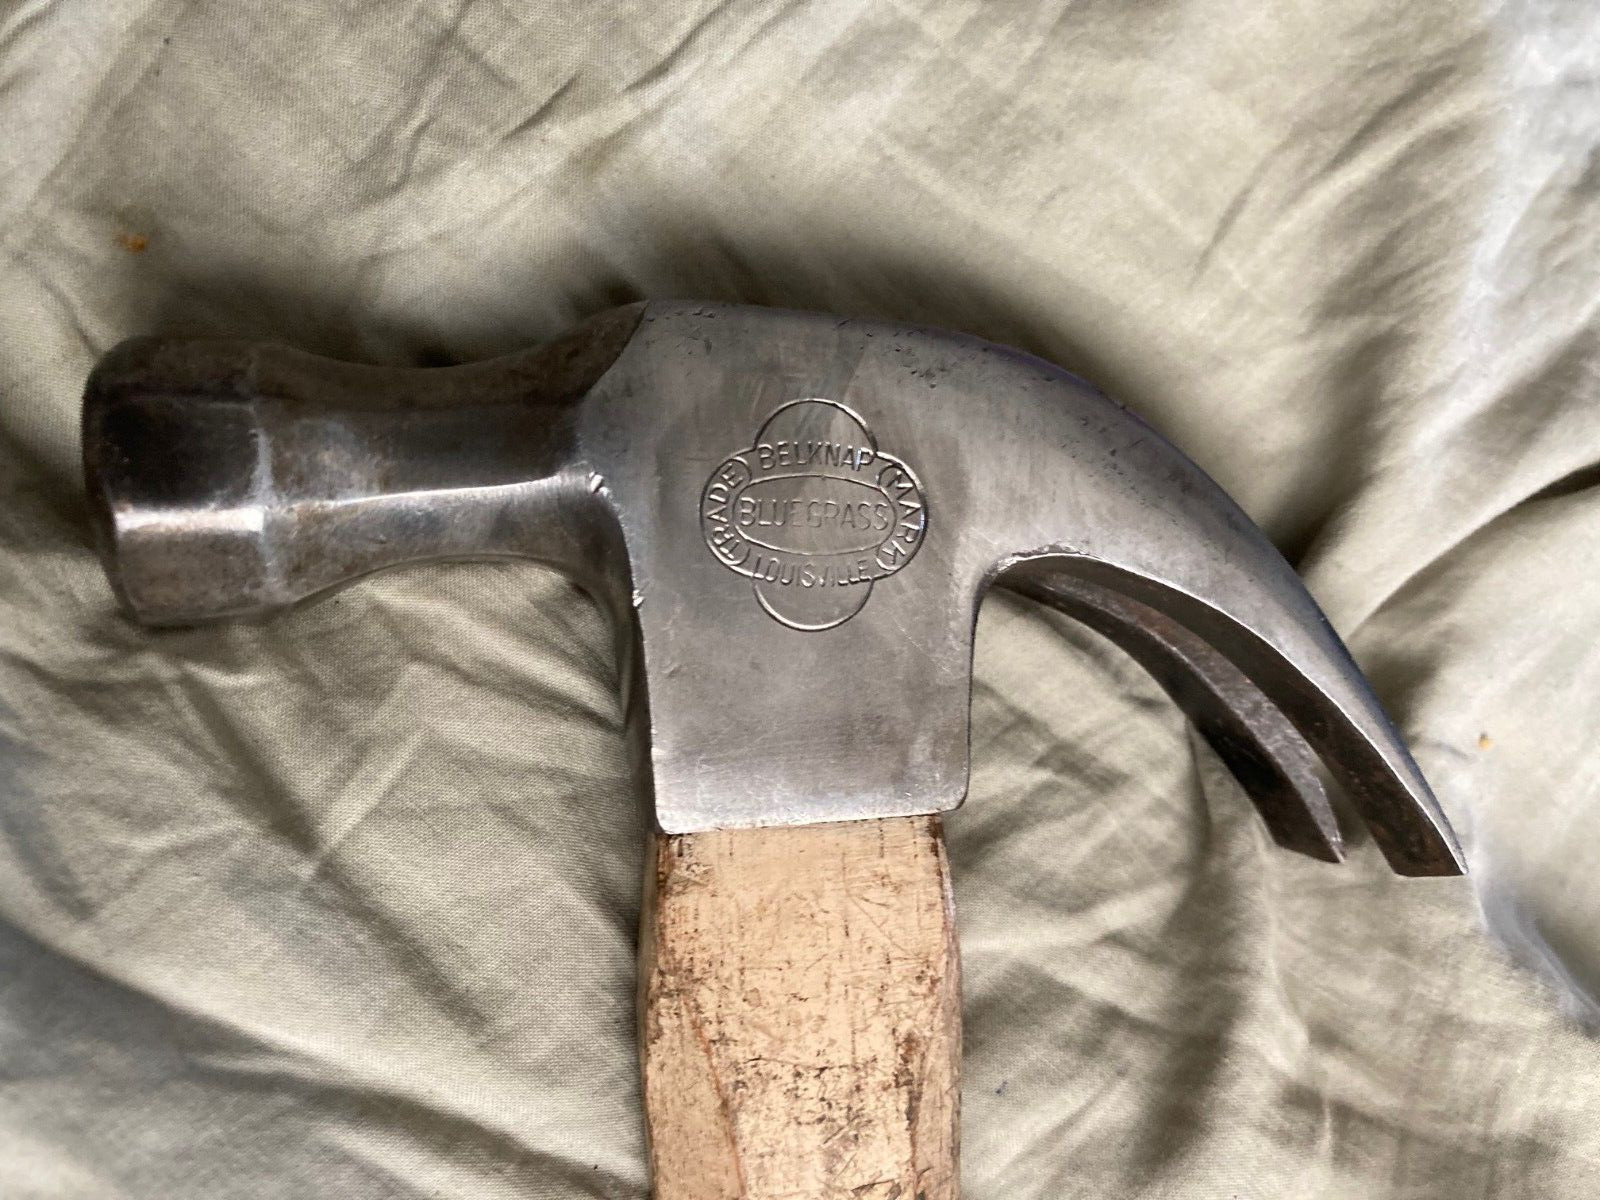 BELKNAP BLUEGRASS Louisville claw hammer BG47-1616 B9 label made-in-USA vintage